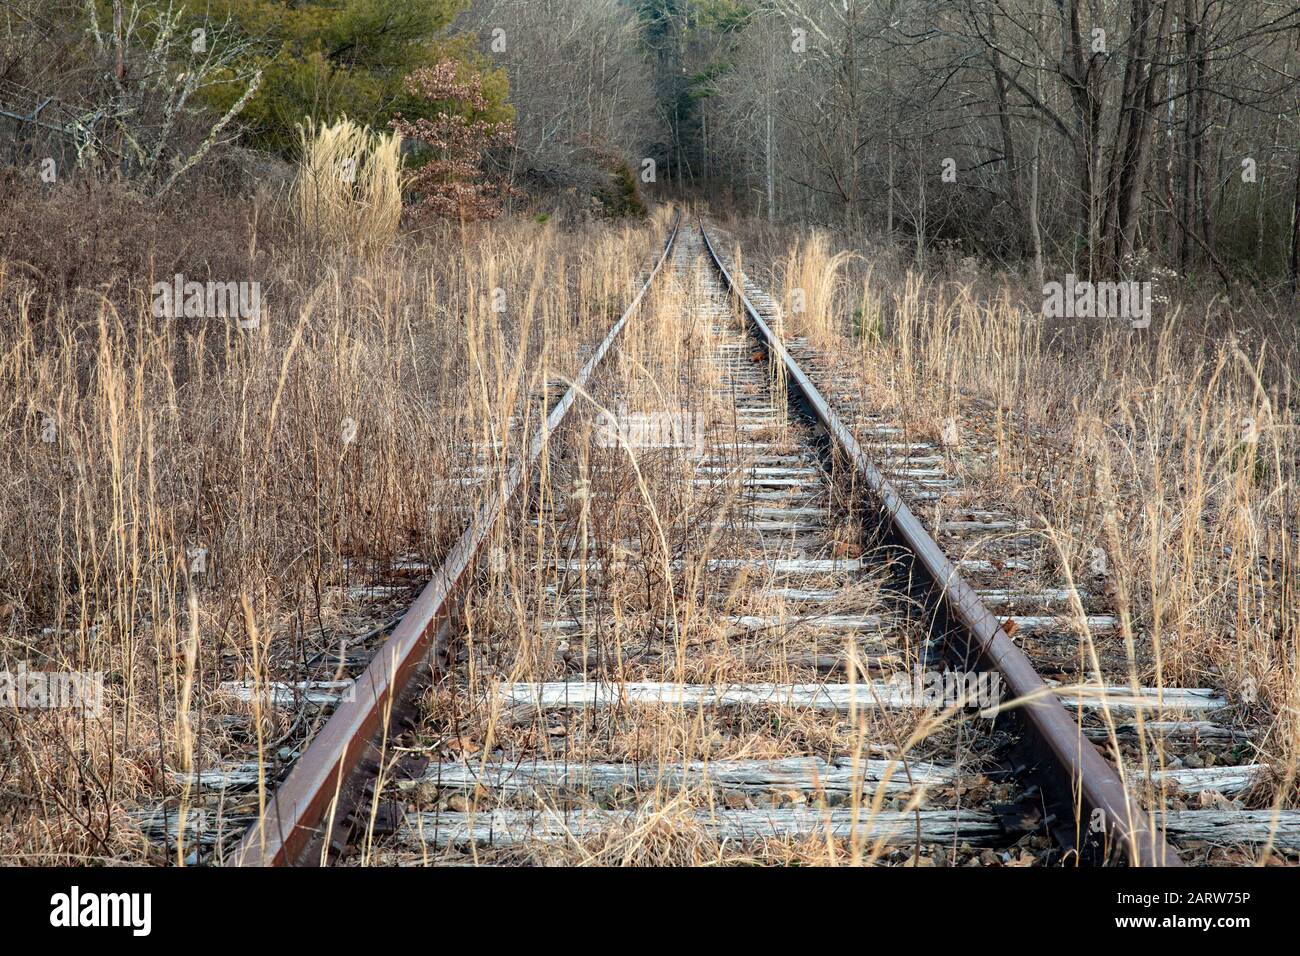 Vías de ferrocarril abandonadas que conducen al bosque. Penrose (cerca de Brevard), Carolina del Norte, Estados Unidos Foto de stock